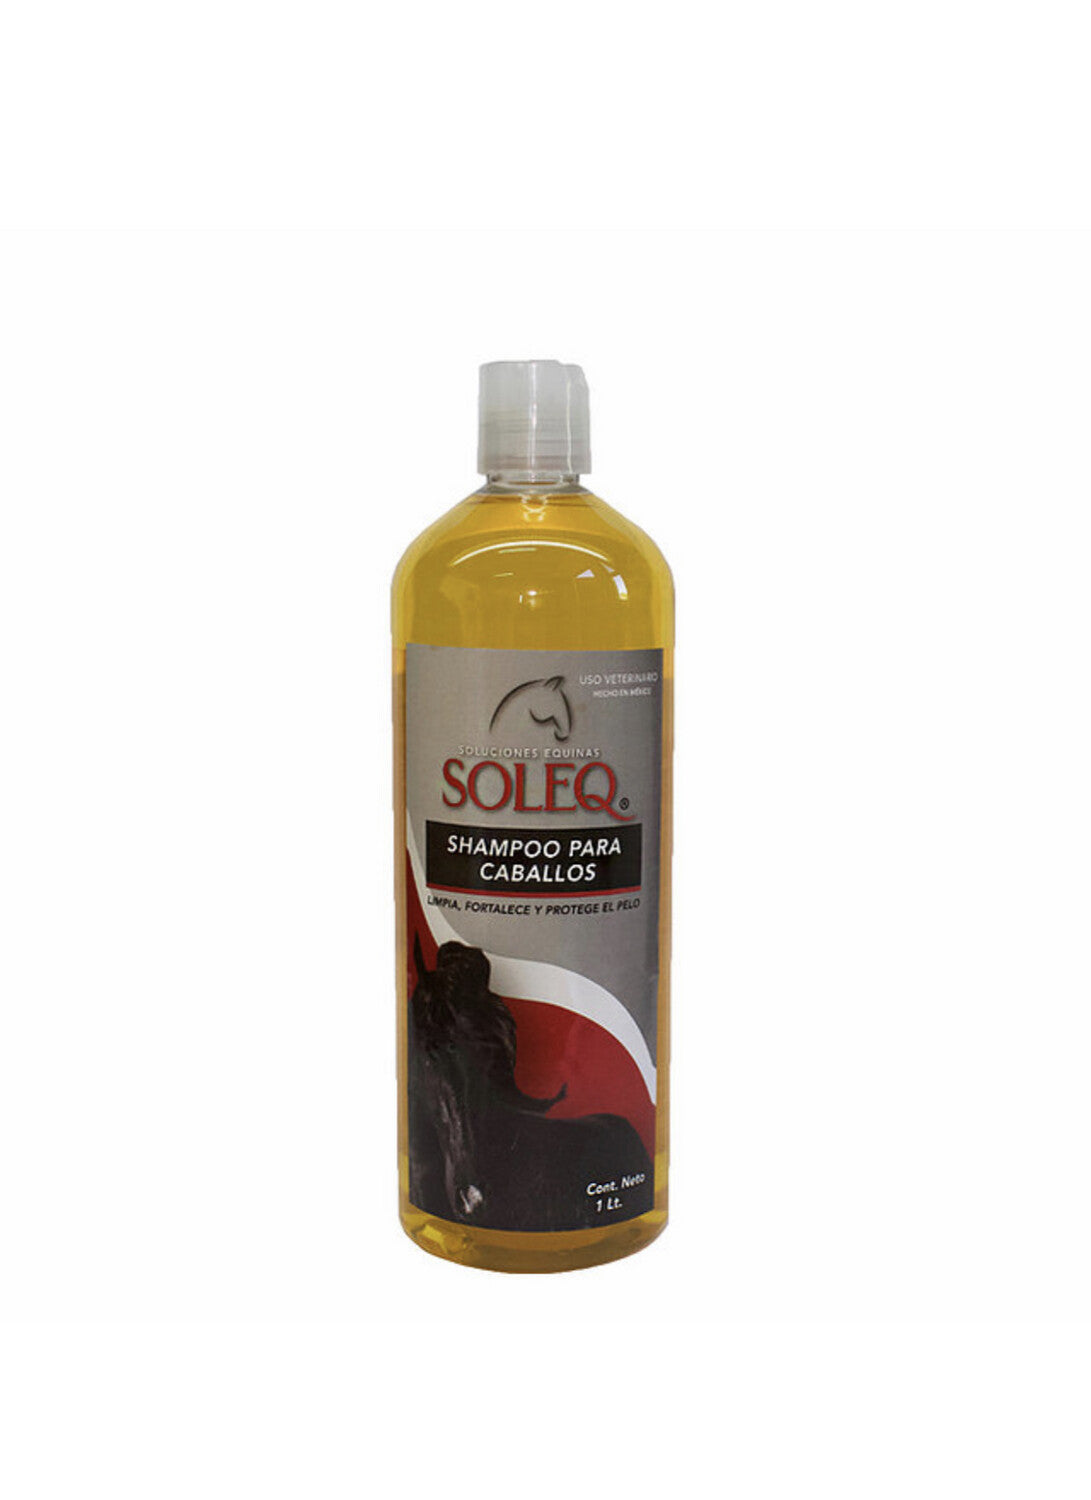 SOLEQ Shampoo